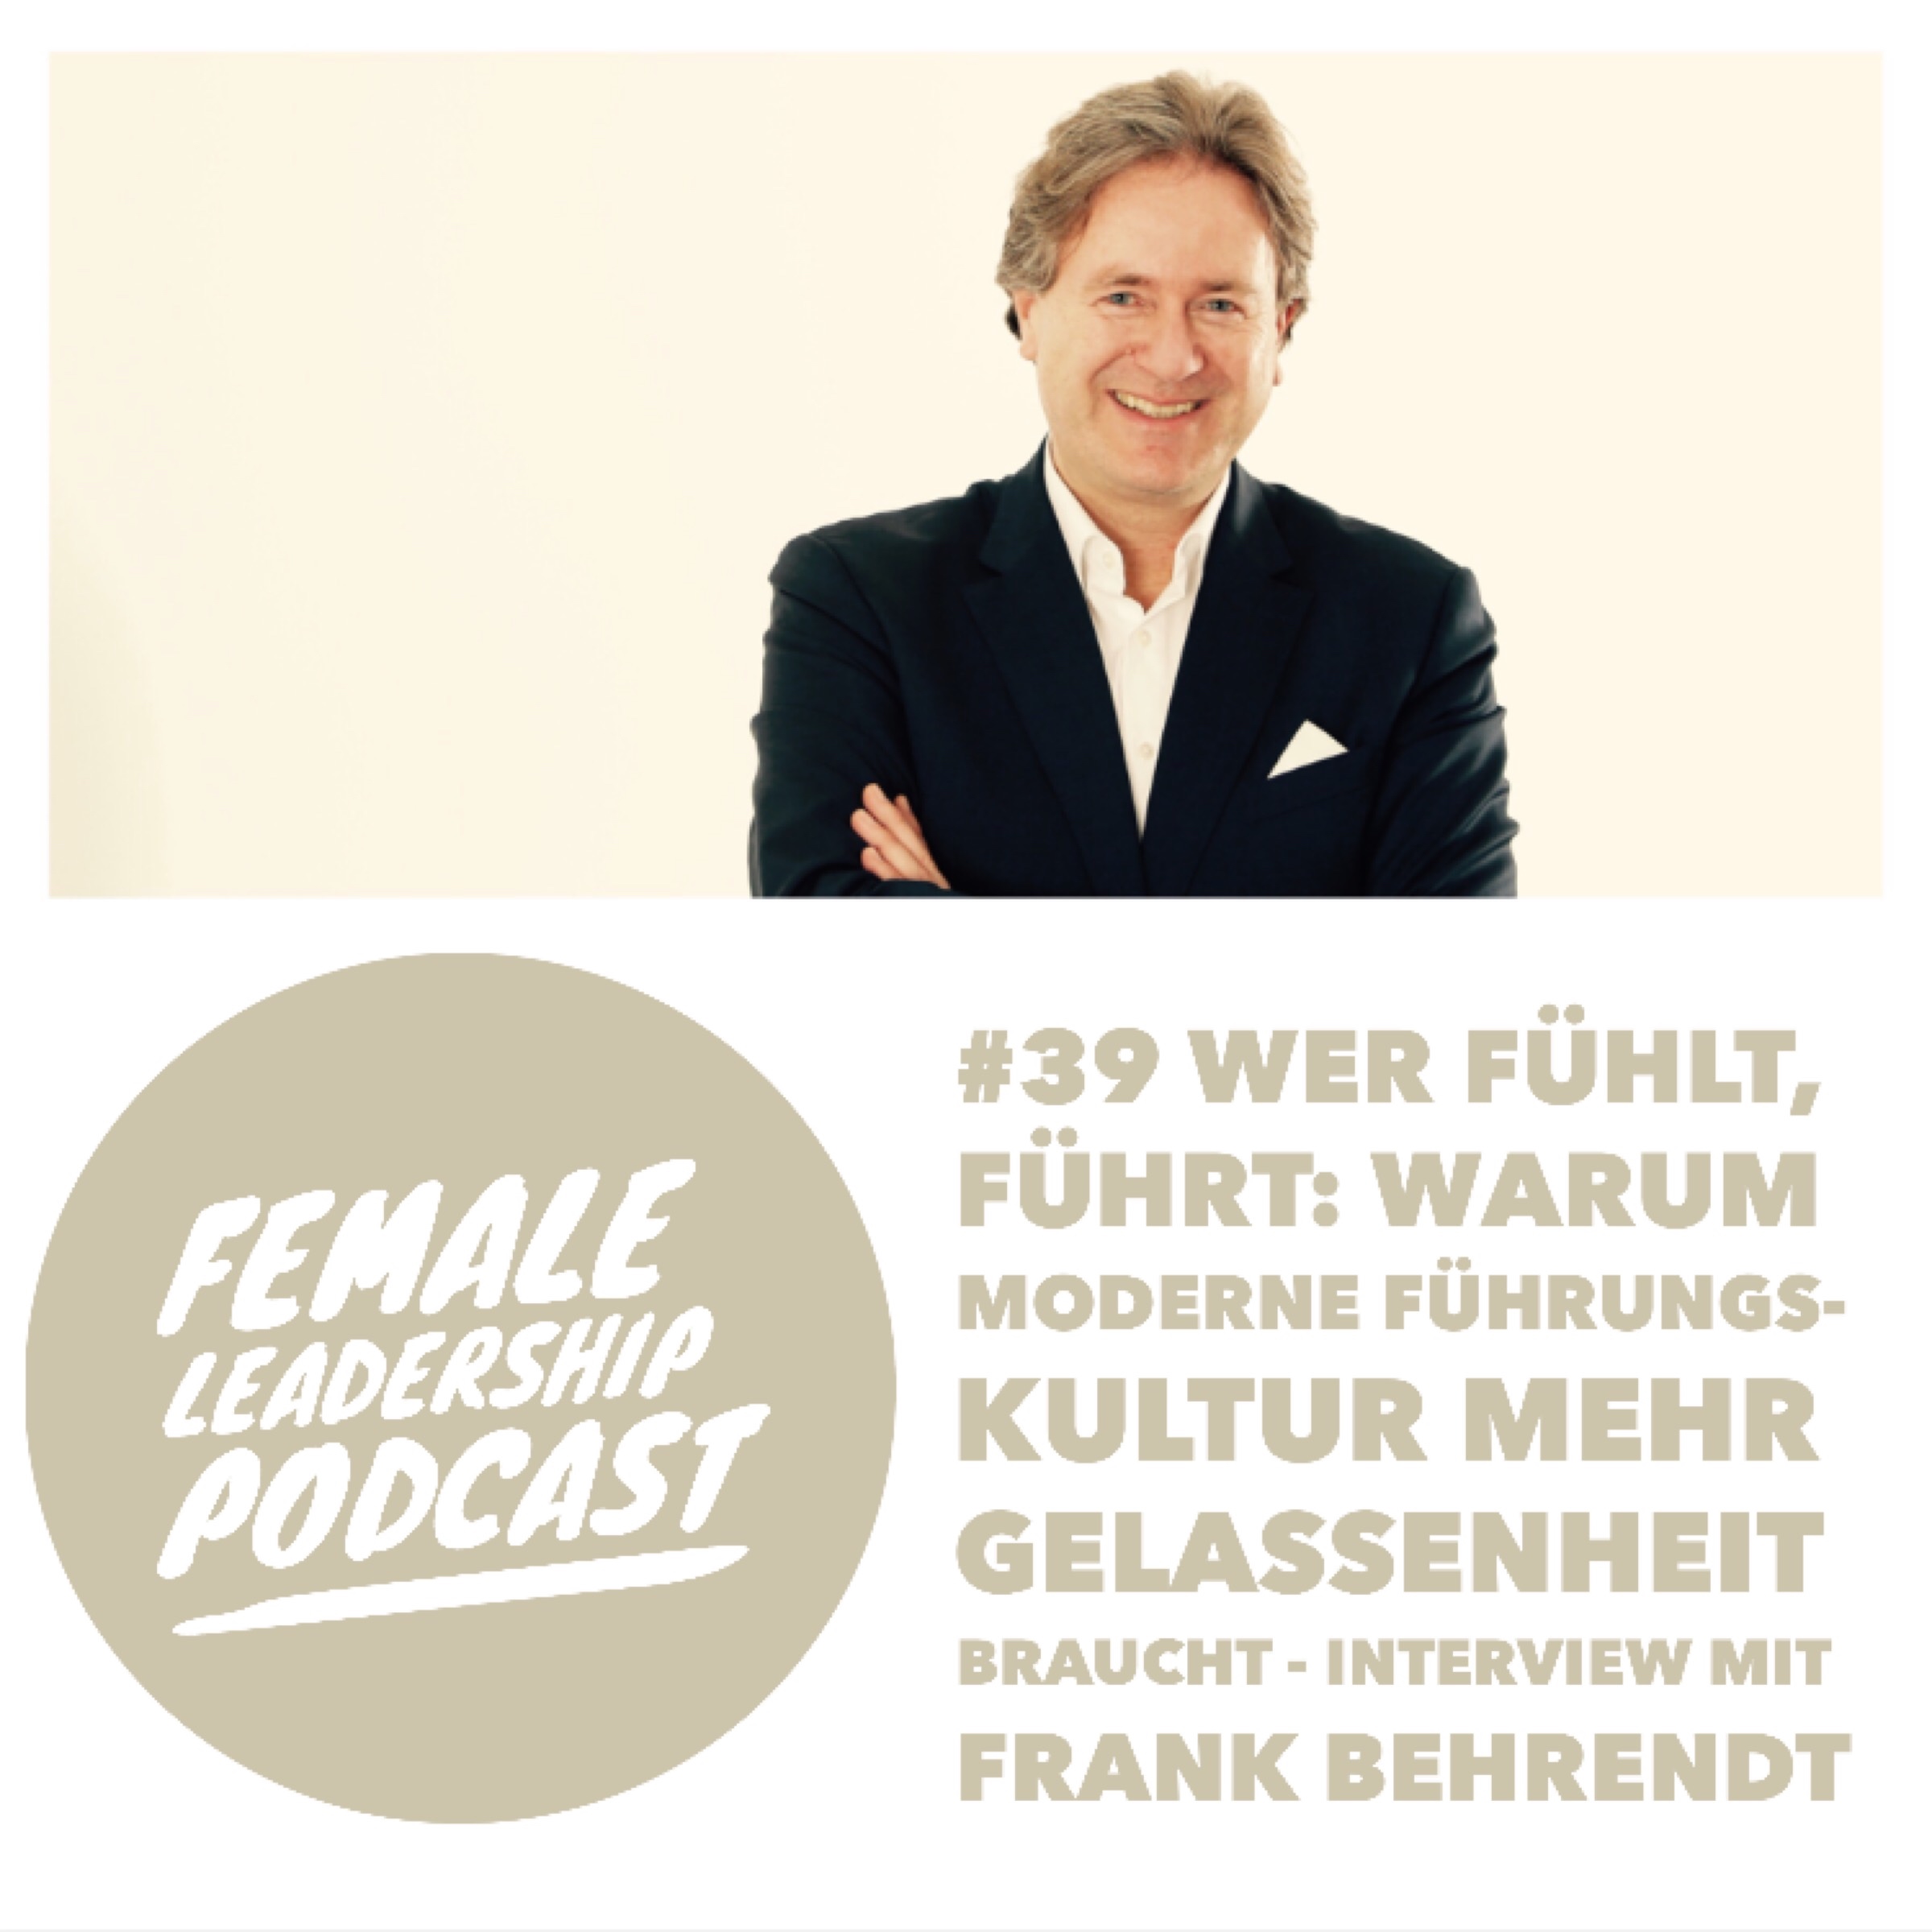 #39 Wer fühlt, führt: Warum moderne Führungskultur mehr Gelassenheit braucht - Interview mit Frank Behrendt